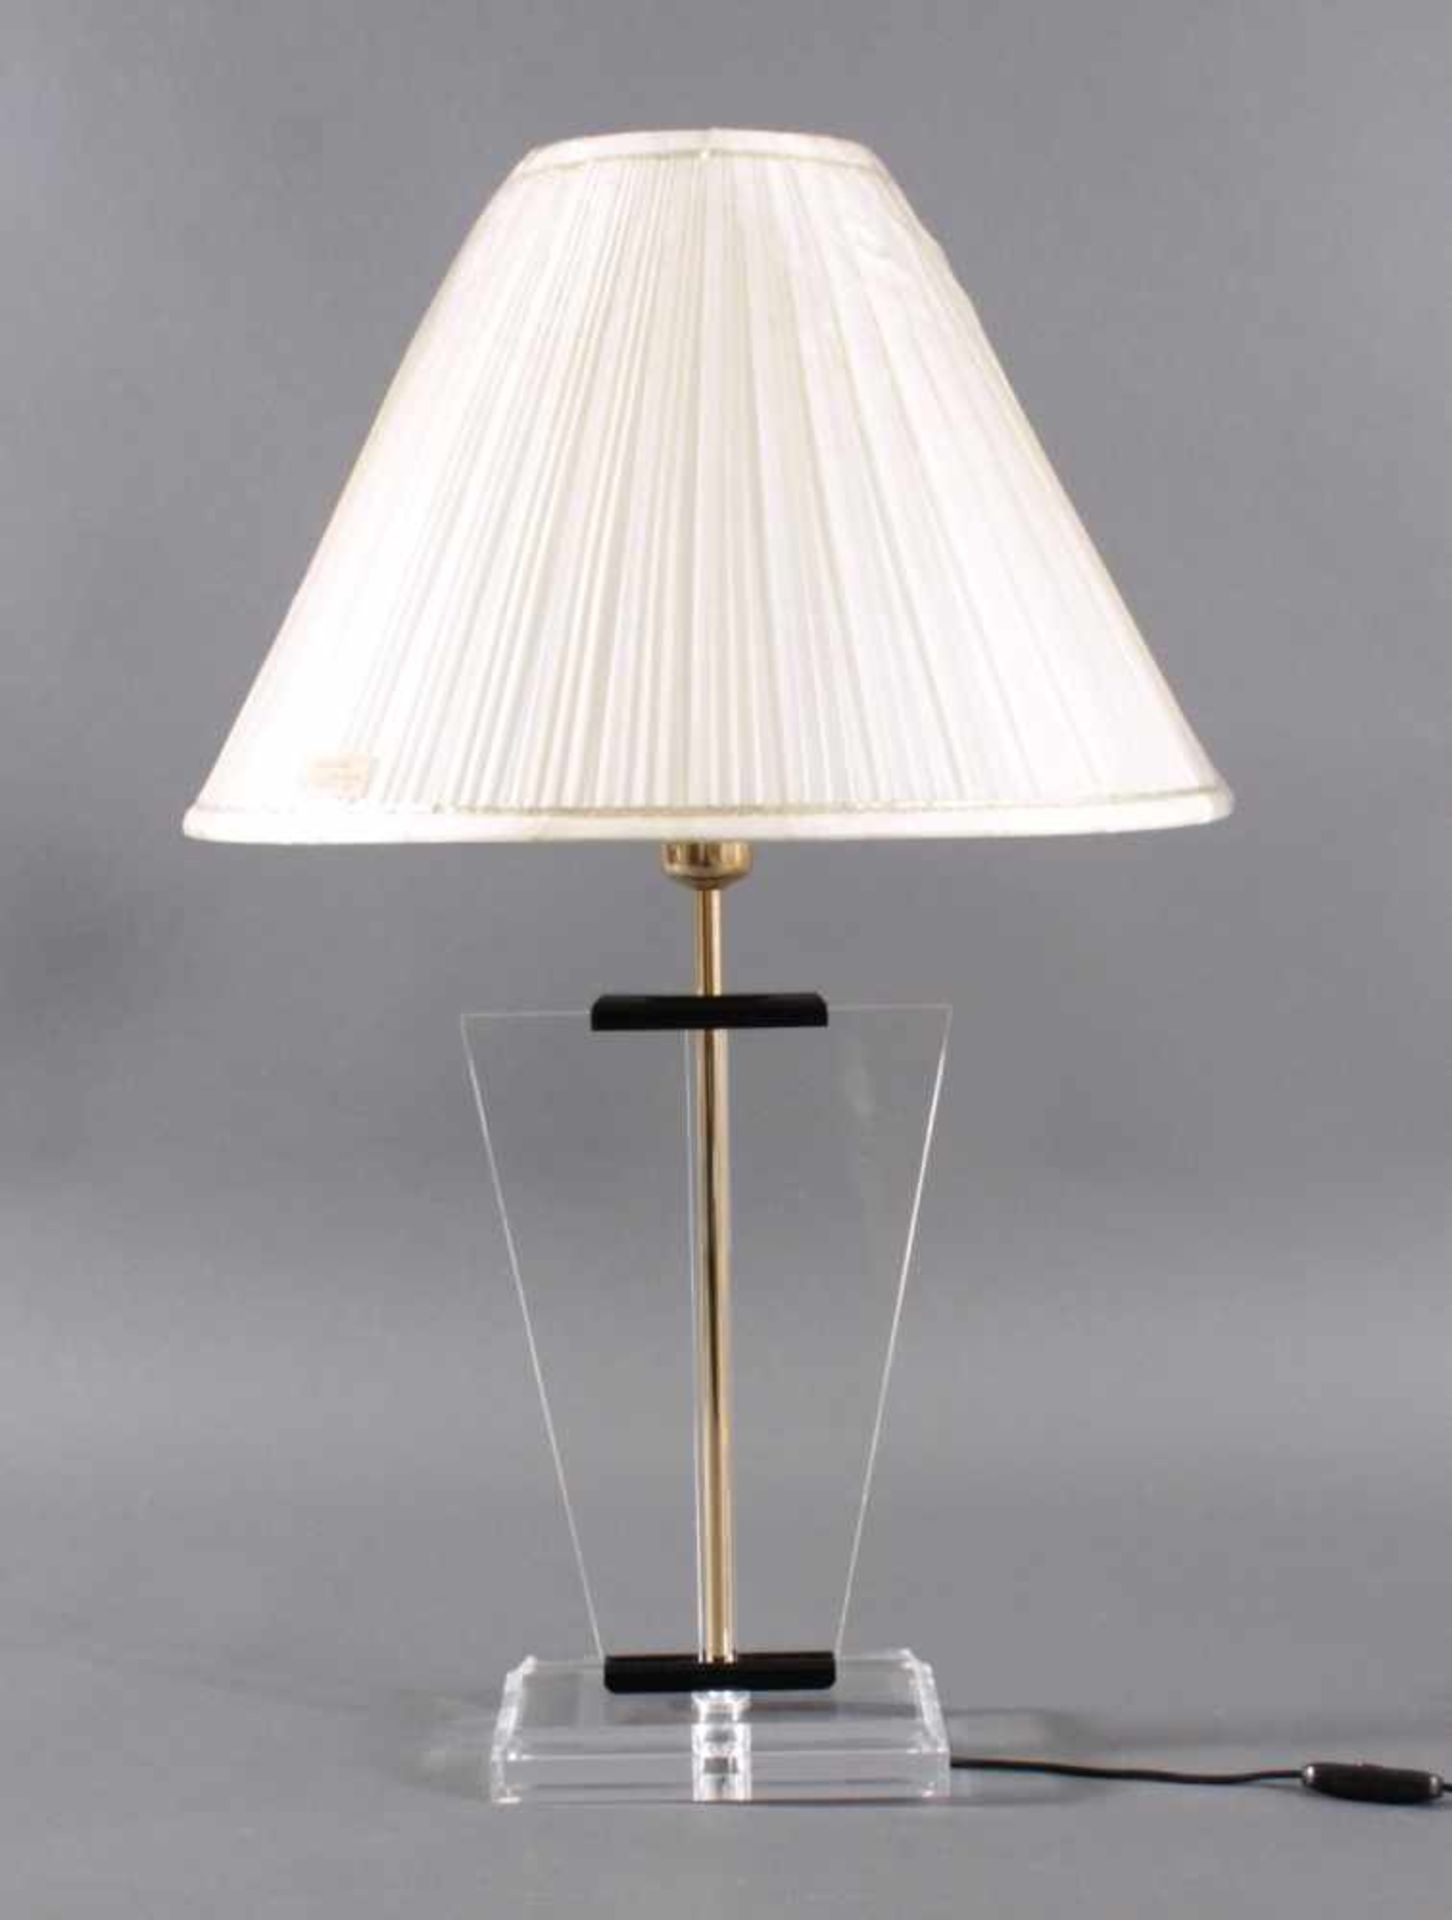 Tischlampe wohl 70er JahreDurchsichtiger Acrylfuß mit durchlaufenden Messingrohr,Schirm zum Schutz